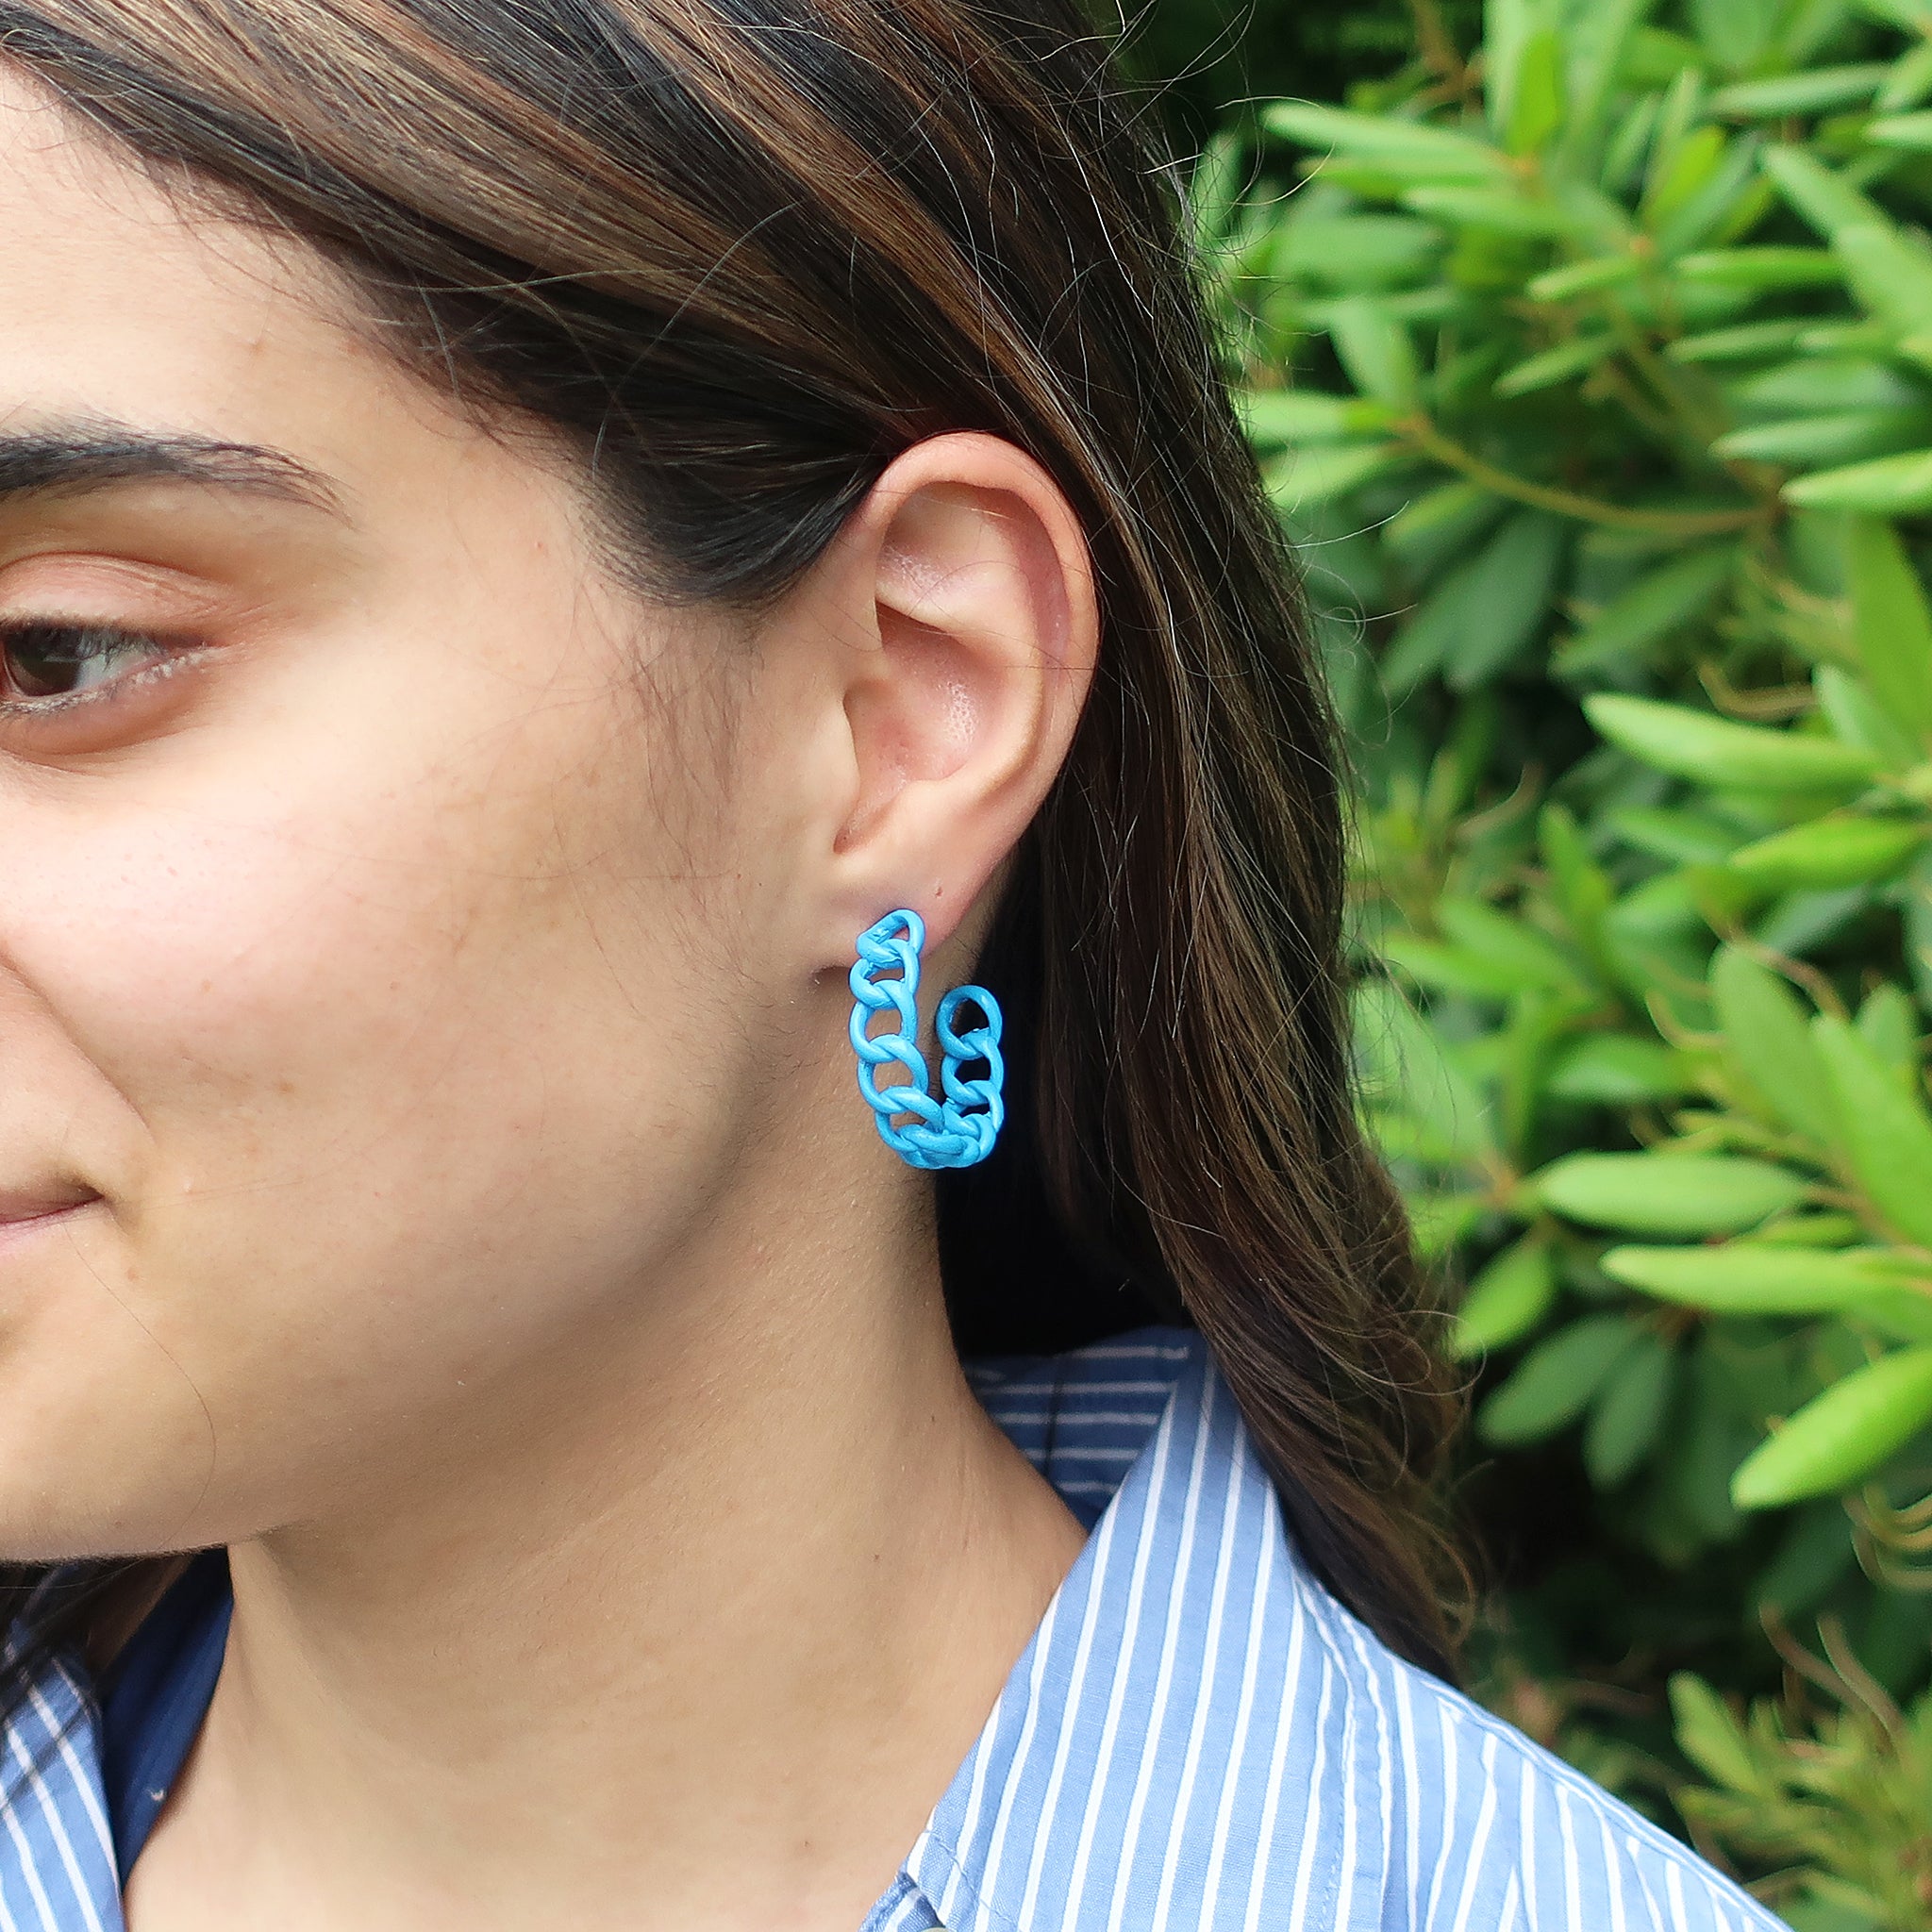 Sheila Fajl Petite Painted Chain Hoop Earrings in Blue